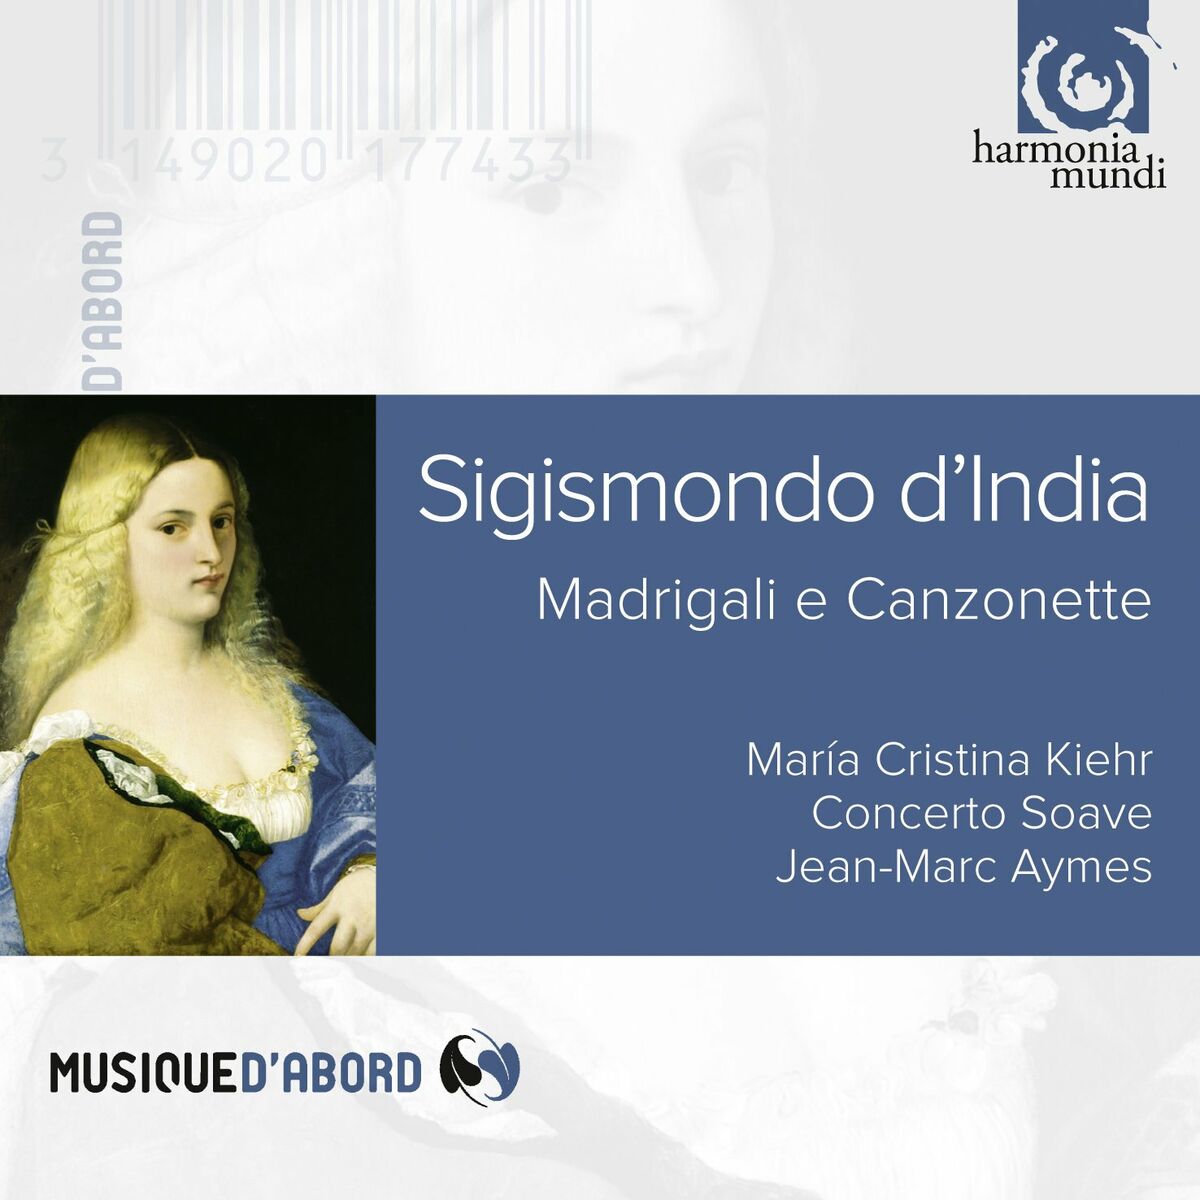 D'India - Madrigali e Canzonette - Maria Cristina Kiehr